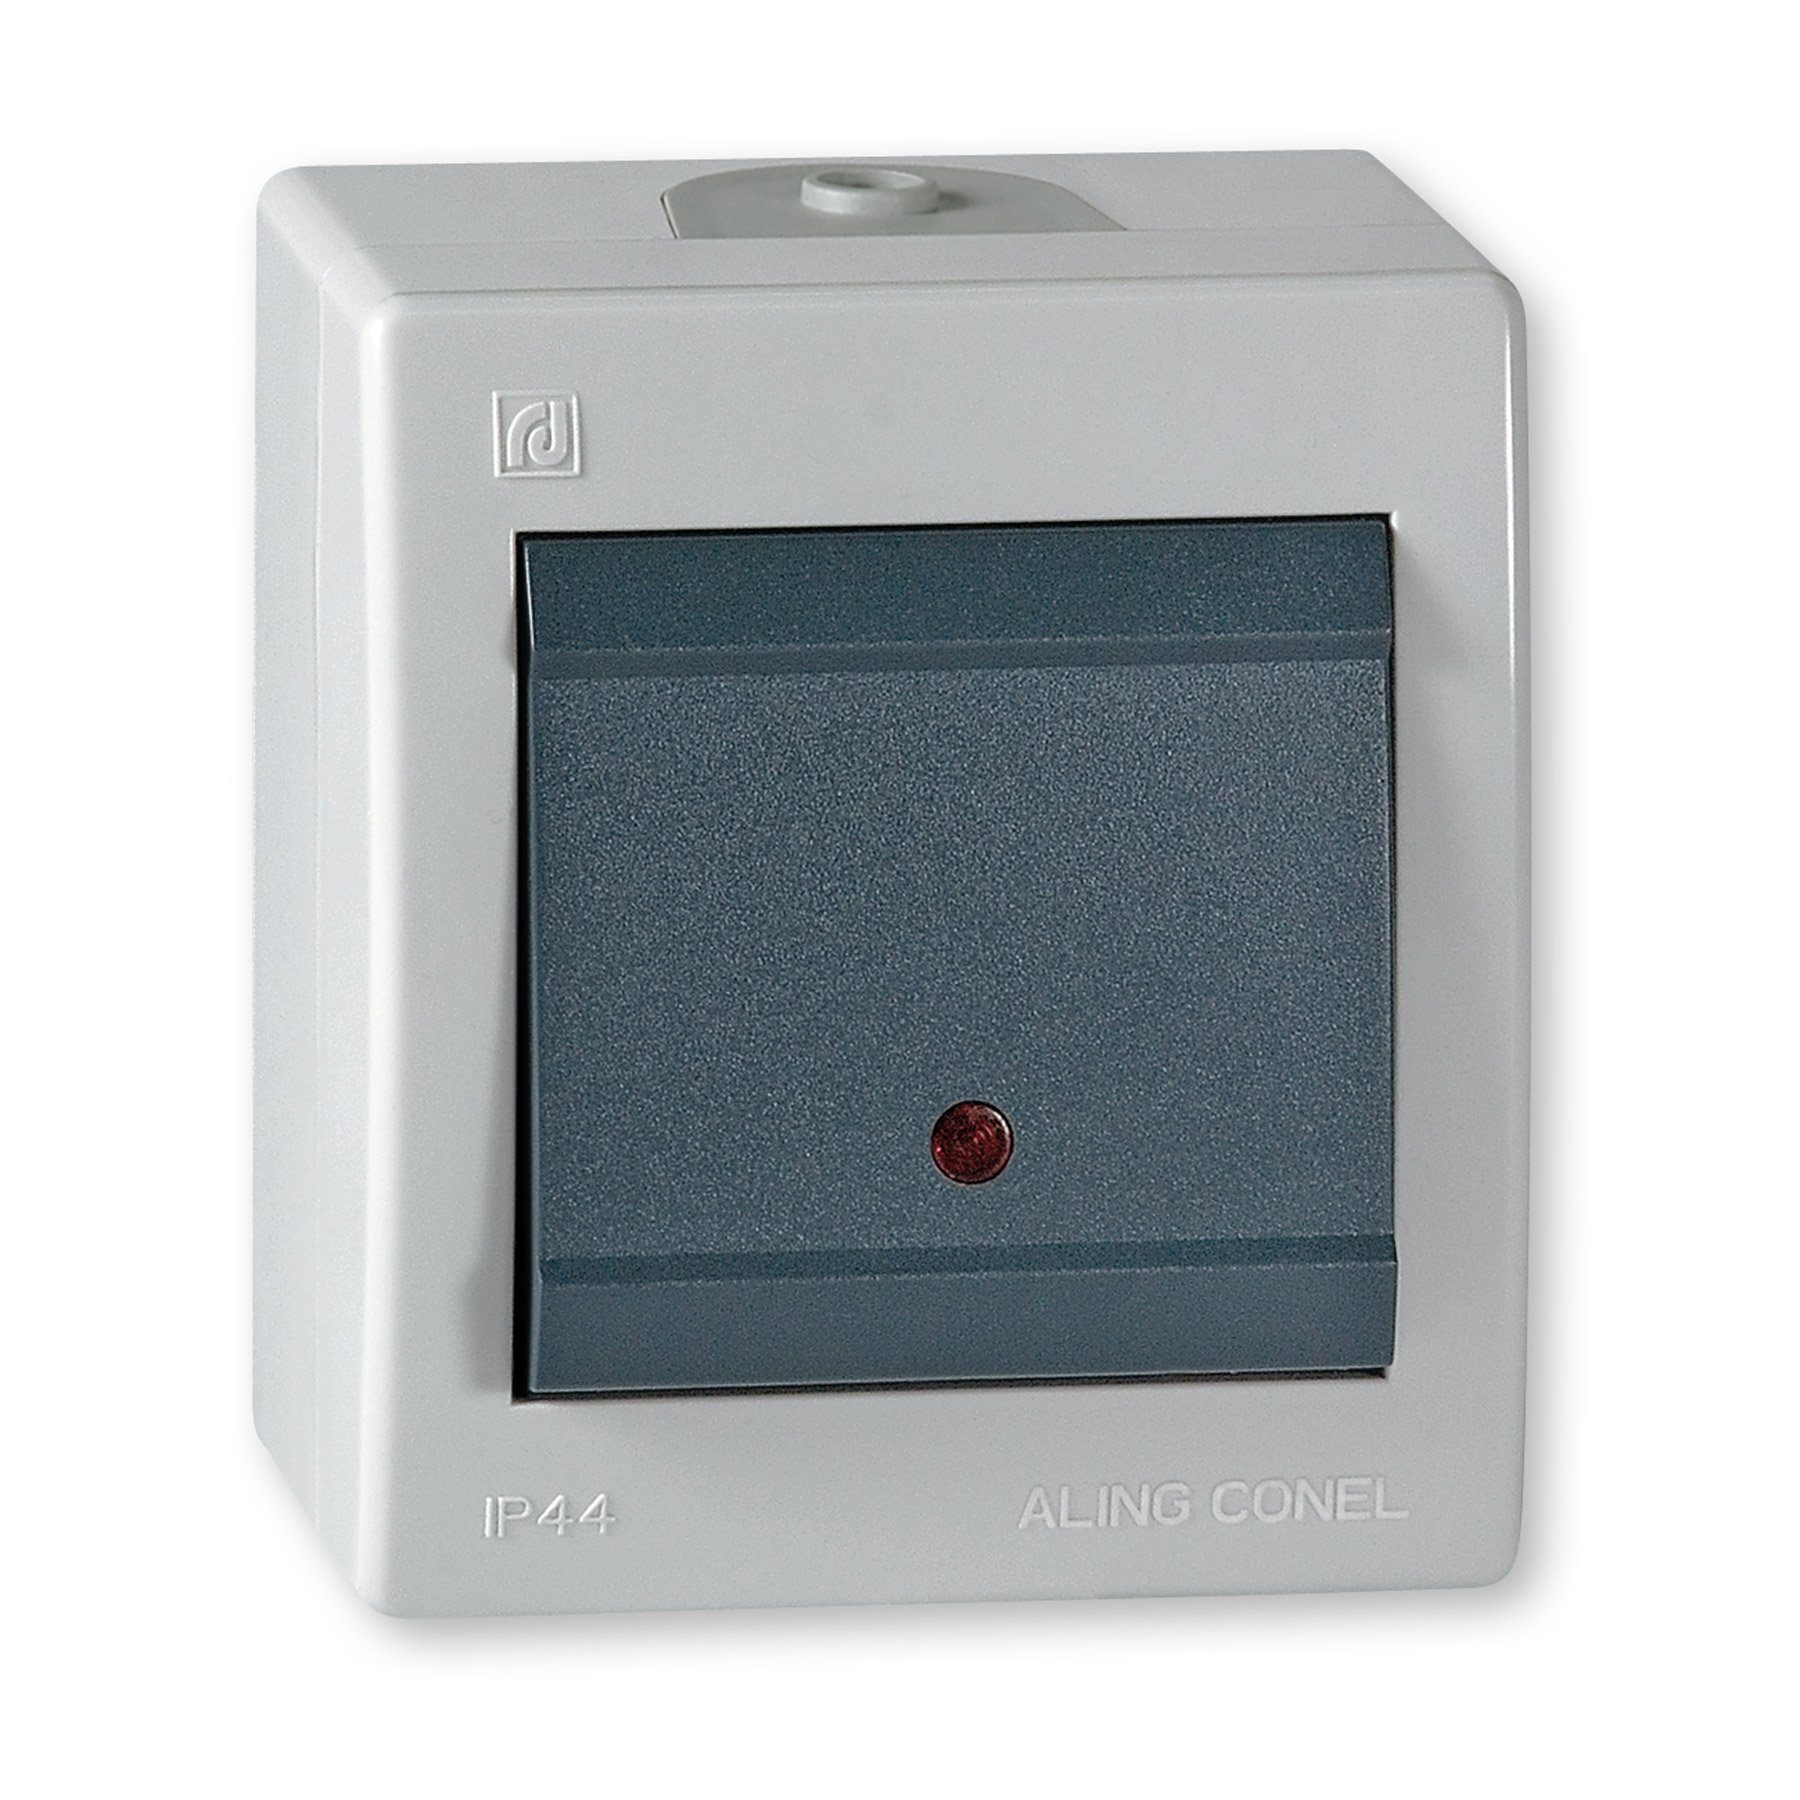 Aling Conel Lichtschalter Power Line Aufputz-Schalter mit Glimmlampe (Packung), IP 44